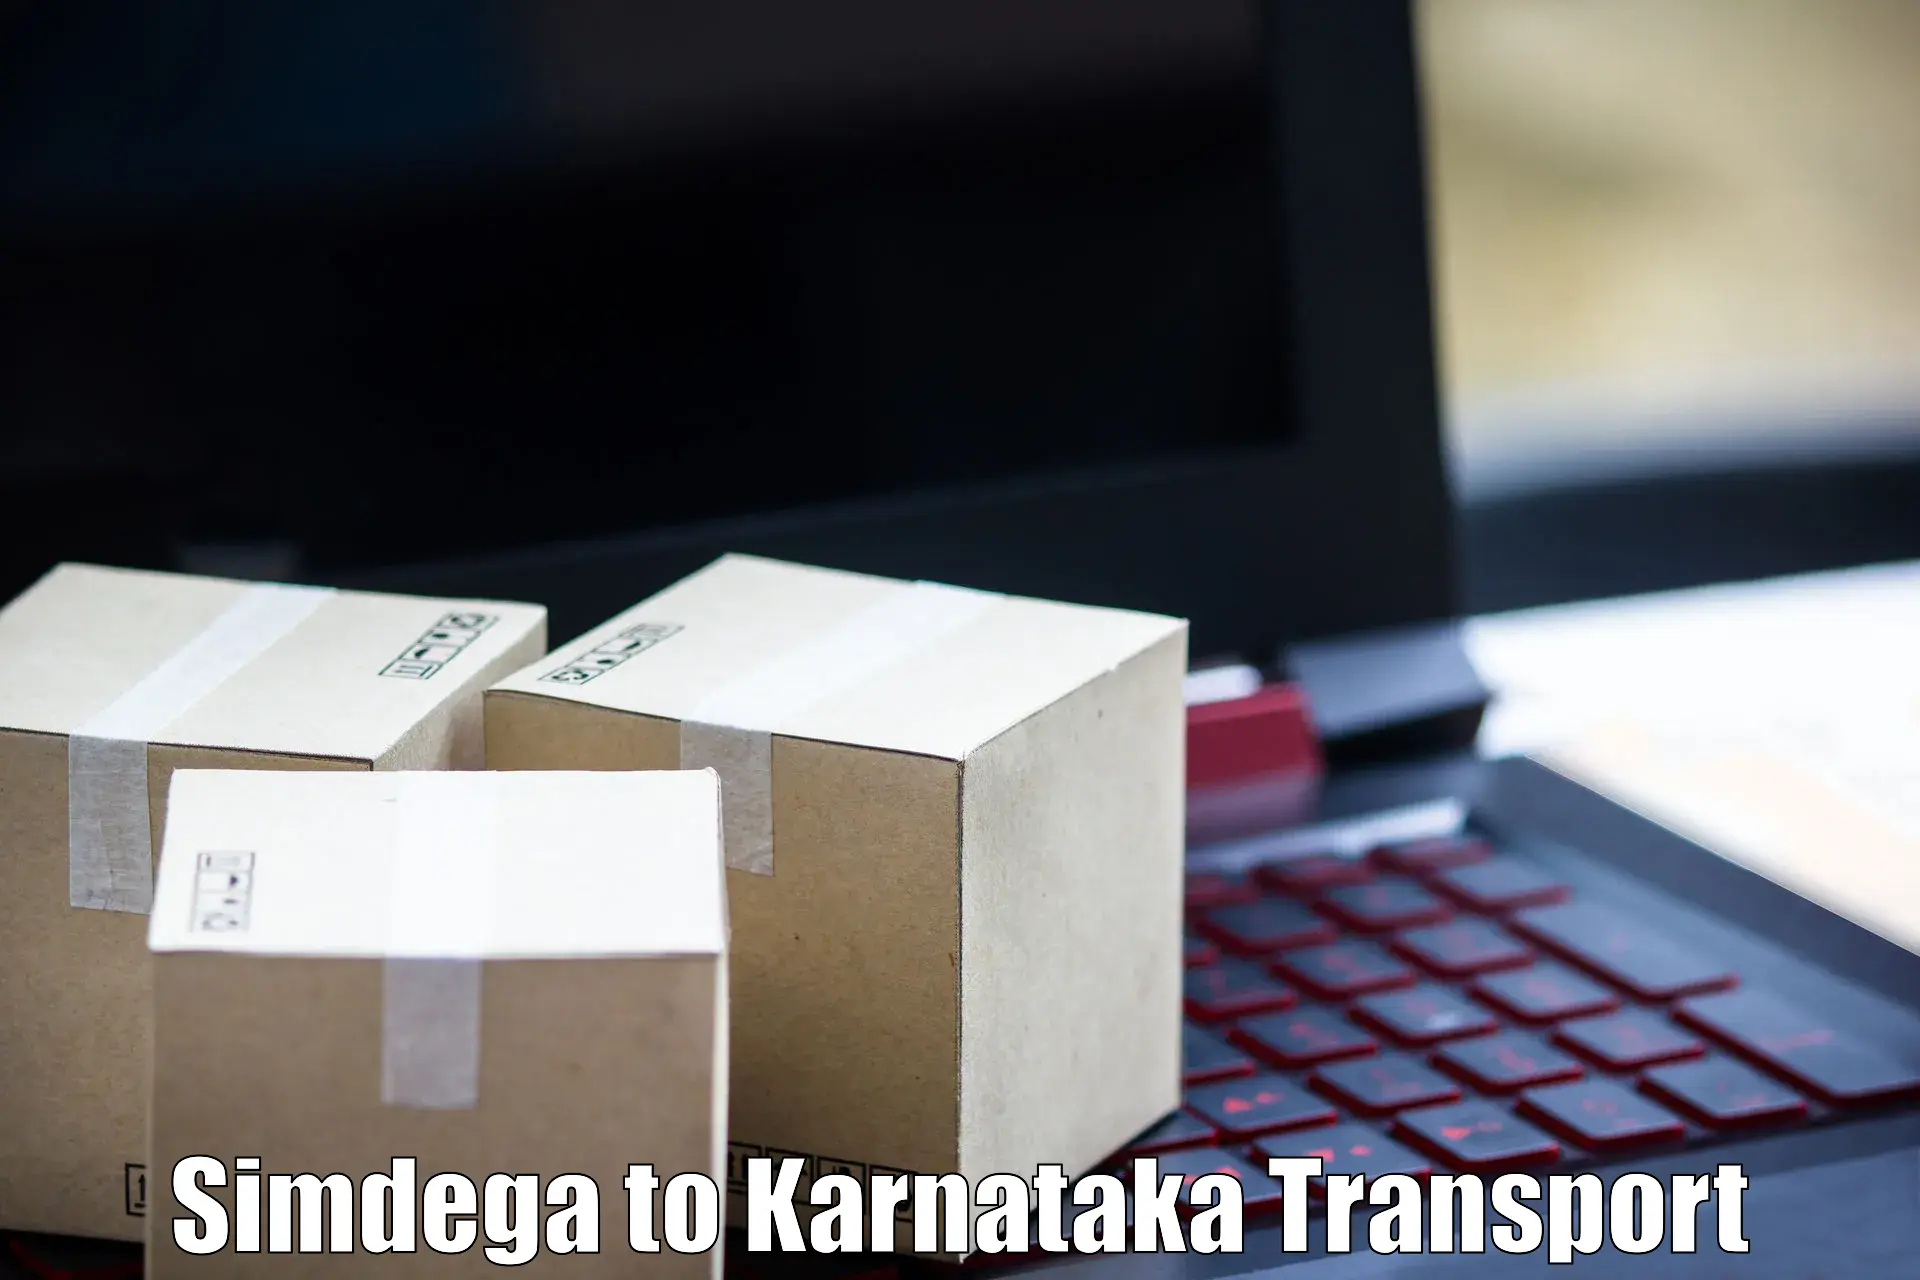 Shipping partner Simdega to Ramanathapura